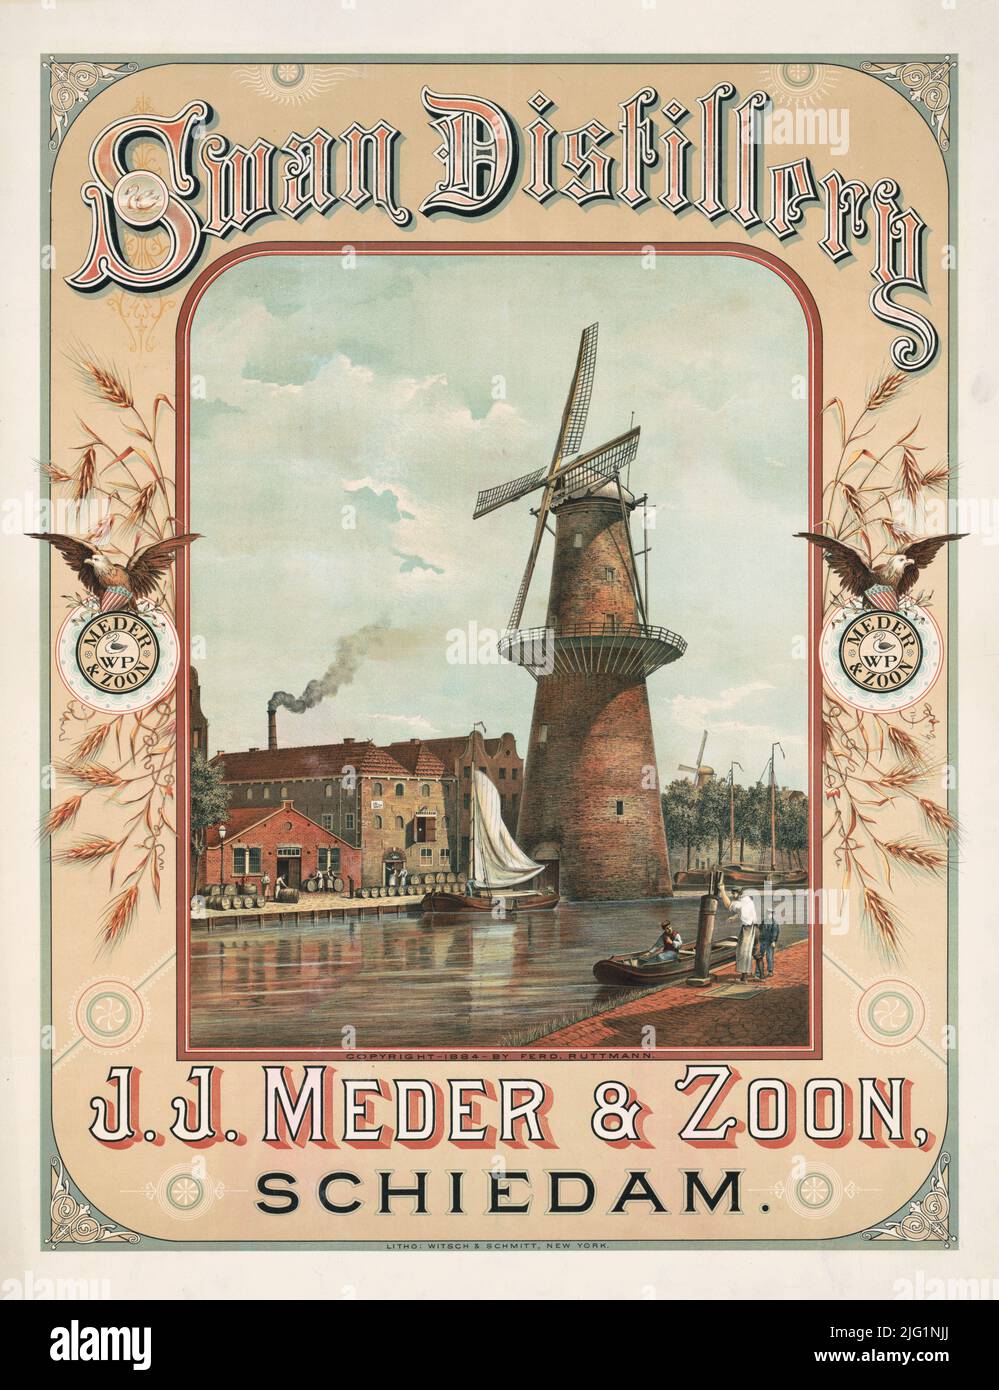 1884 annonce pour Swan Distillery, J. J. Meder et Zoon, Schiedam. Lithographie par Witsch & Schmitt Banque D'Images